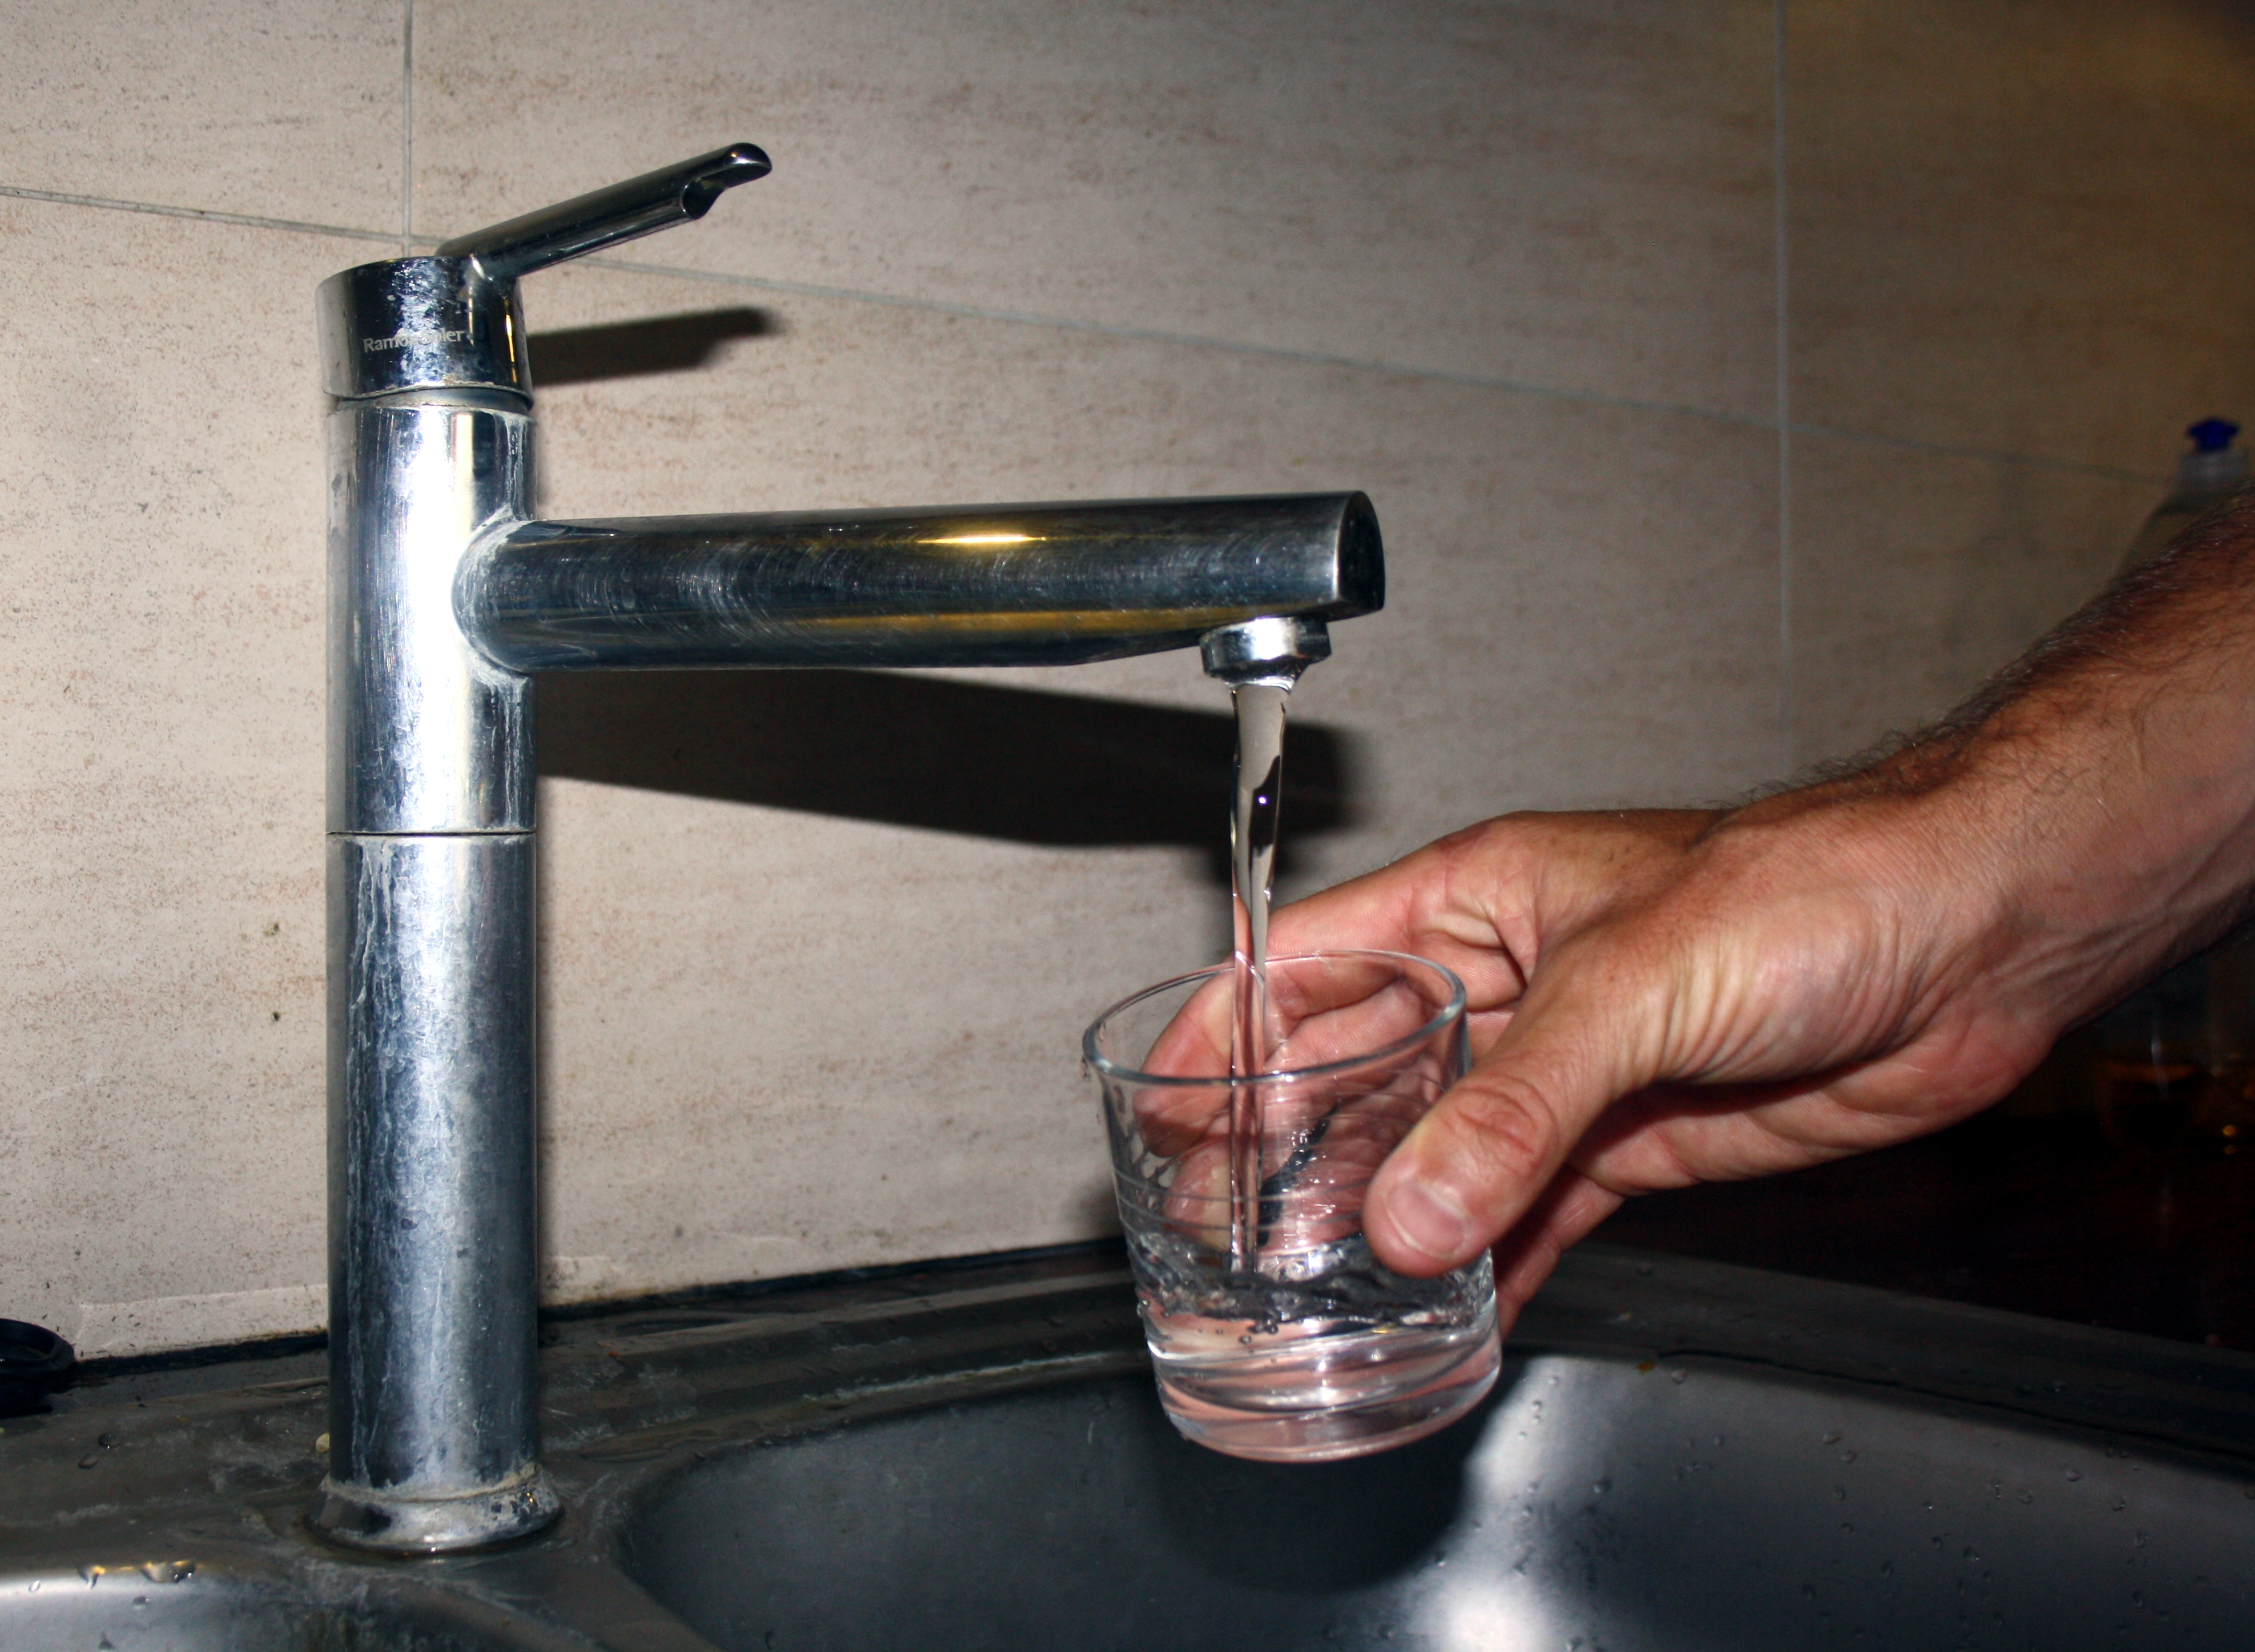 Les élus municipaux veulent créer un tarif social de l'eau